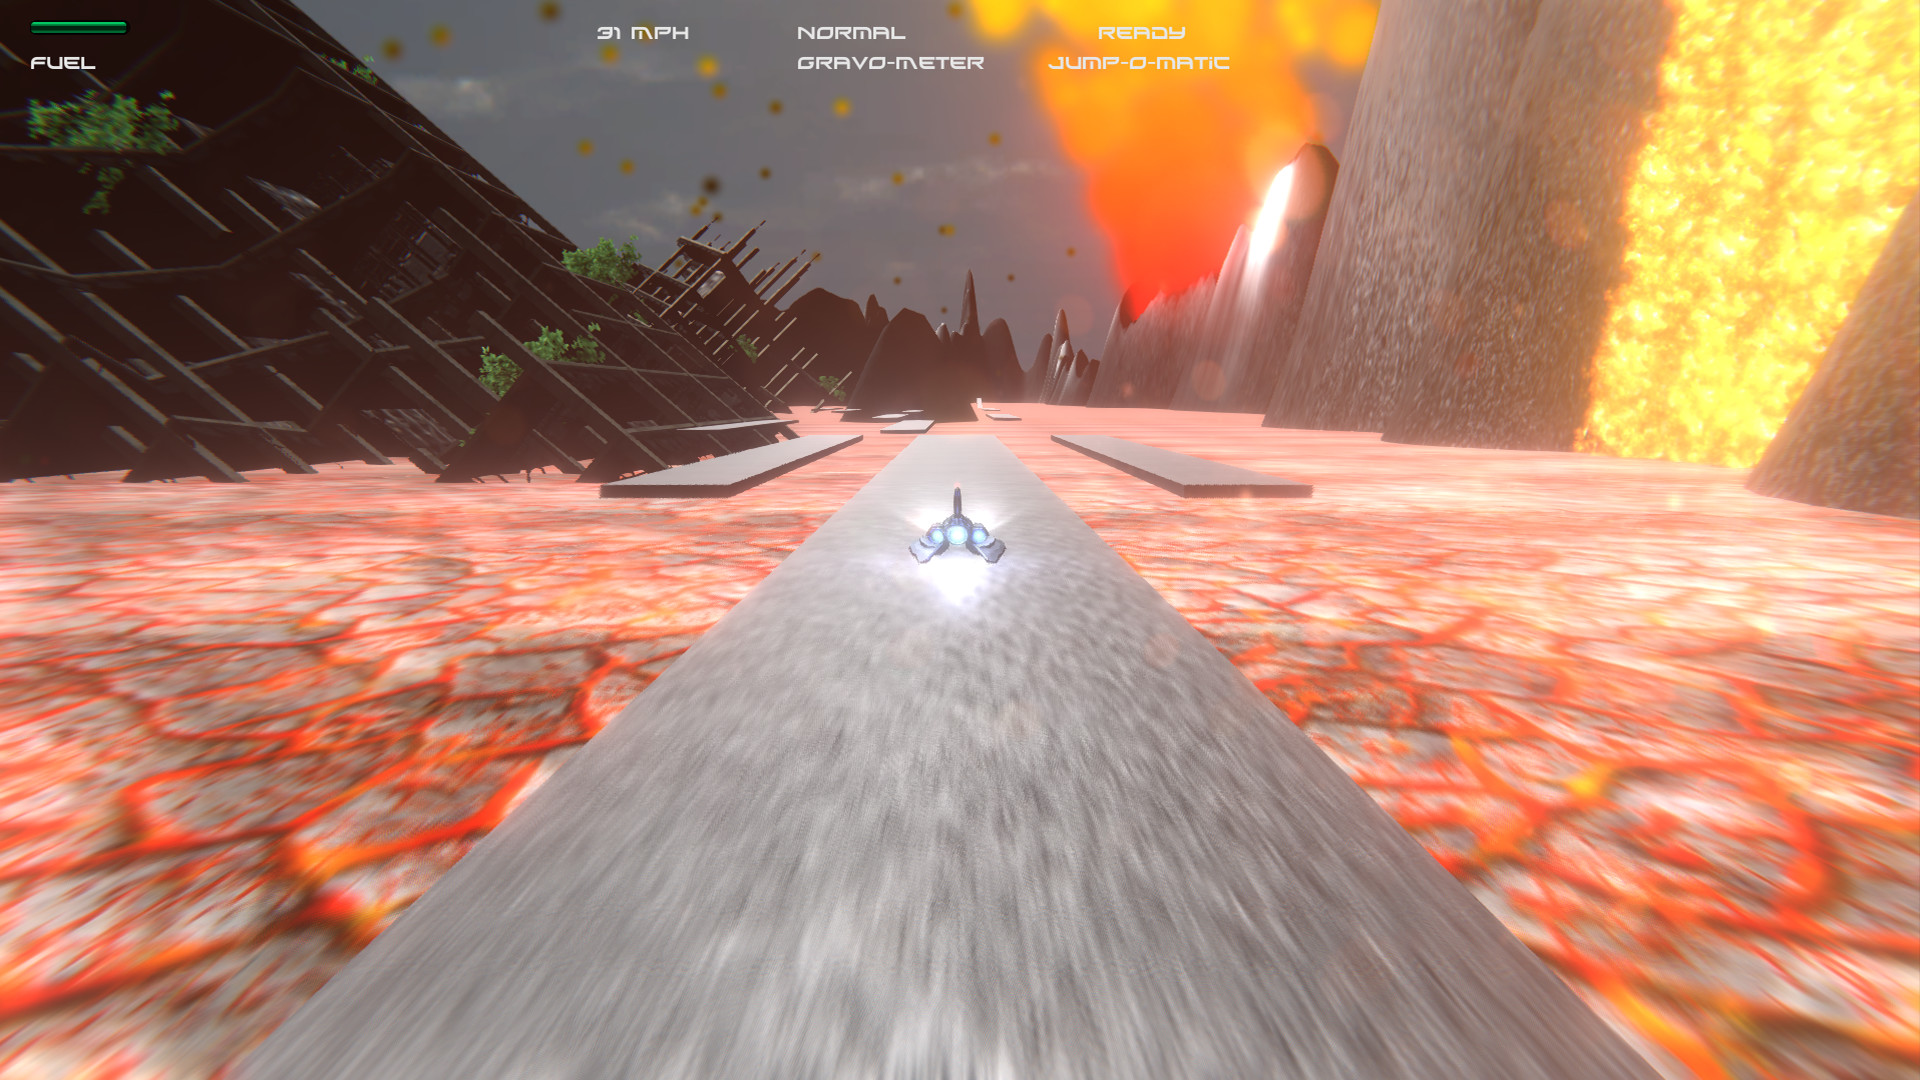 SpaceRoads screenshot